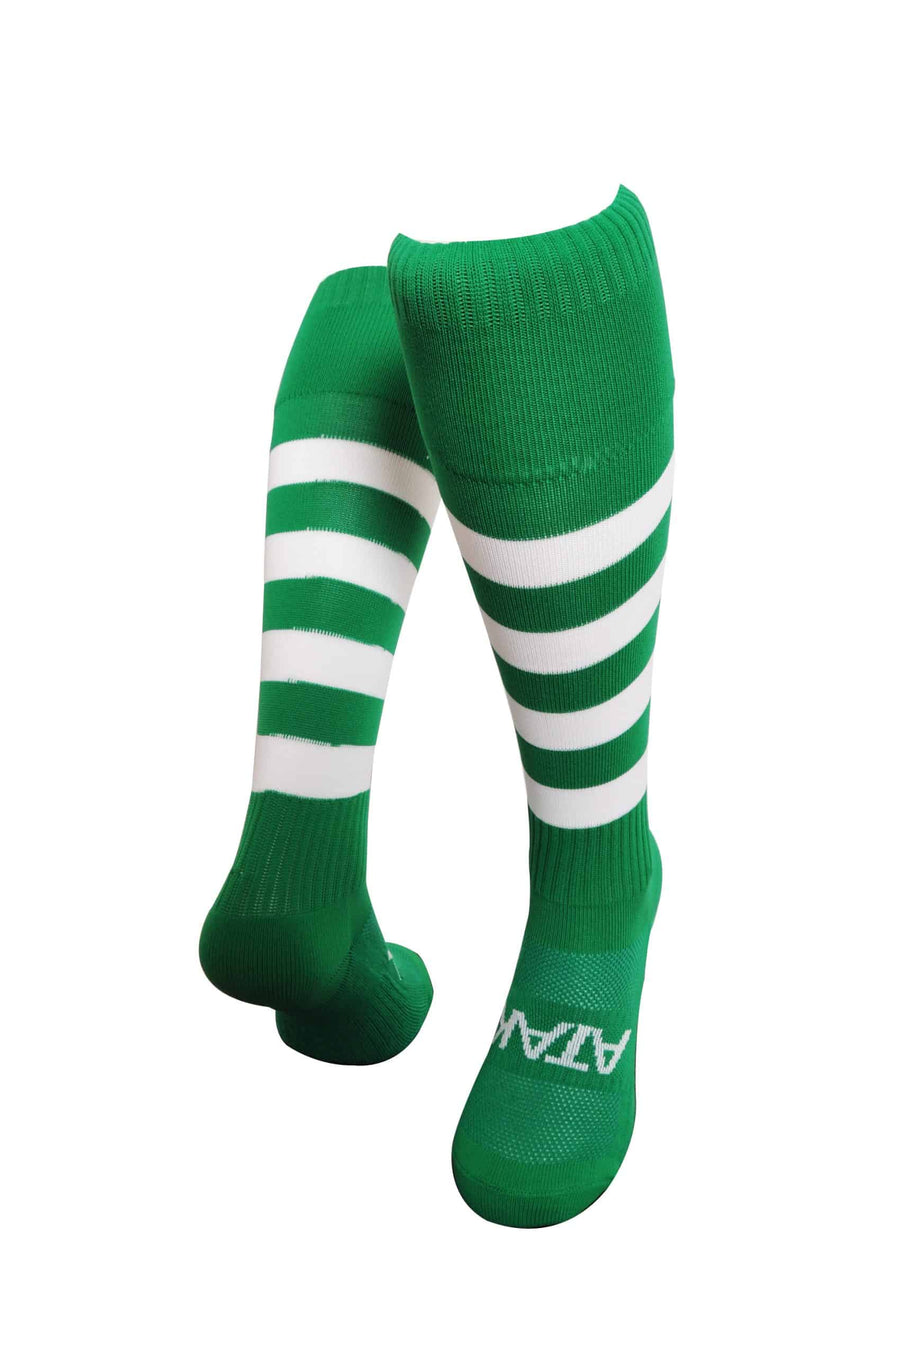 ATAK Hoops Socks Green/White